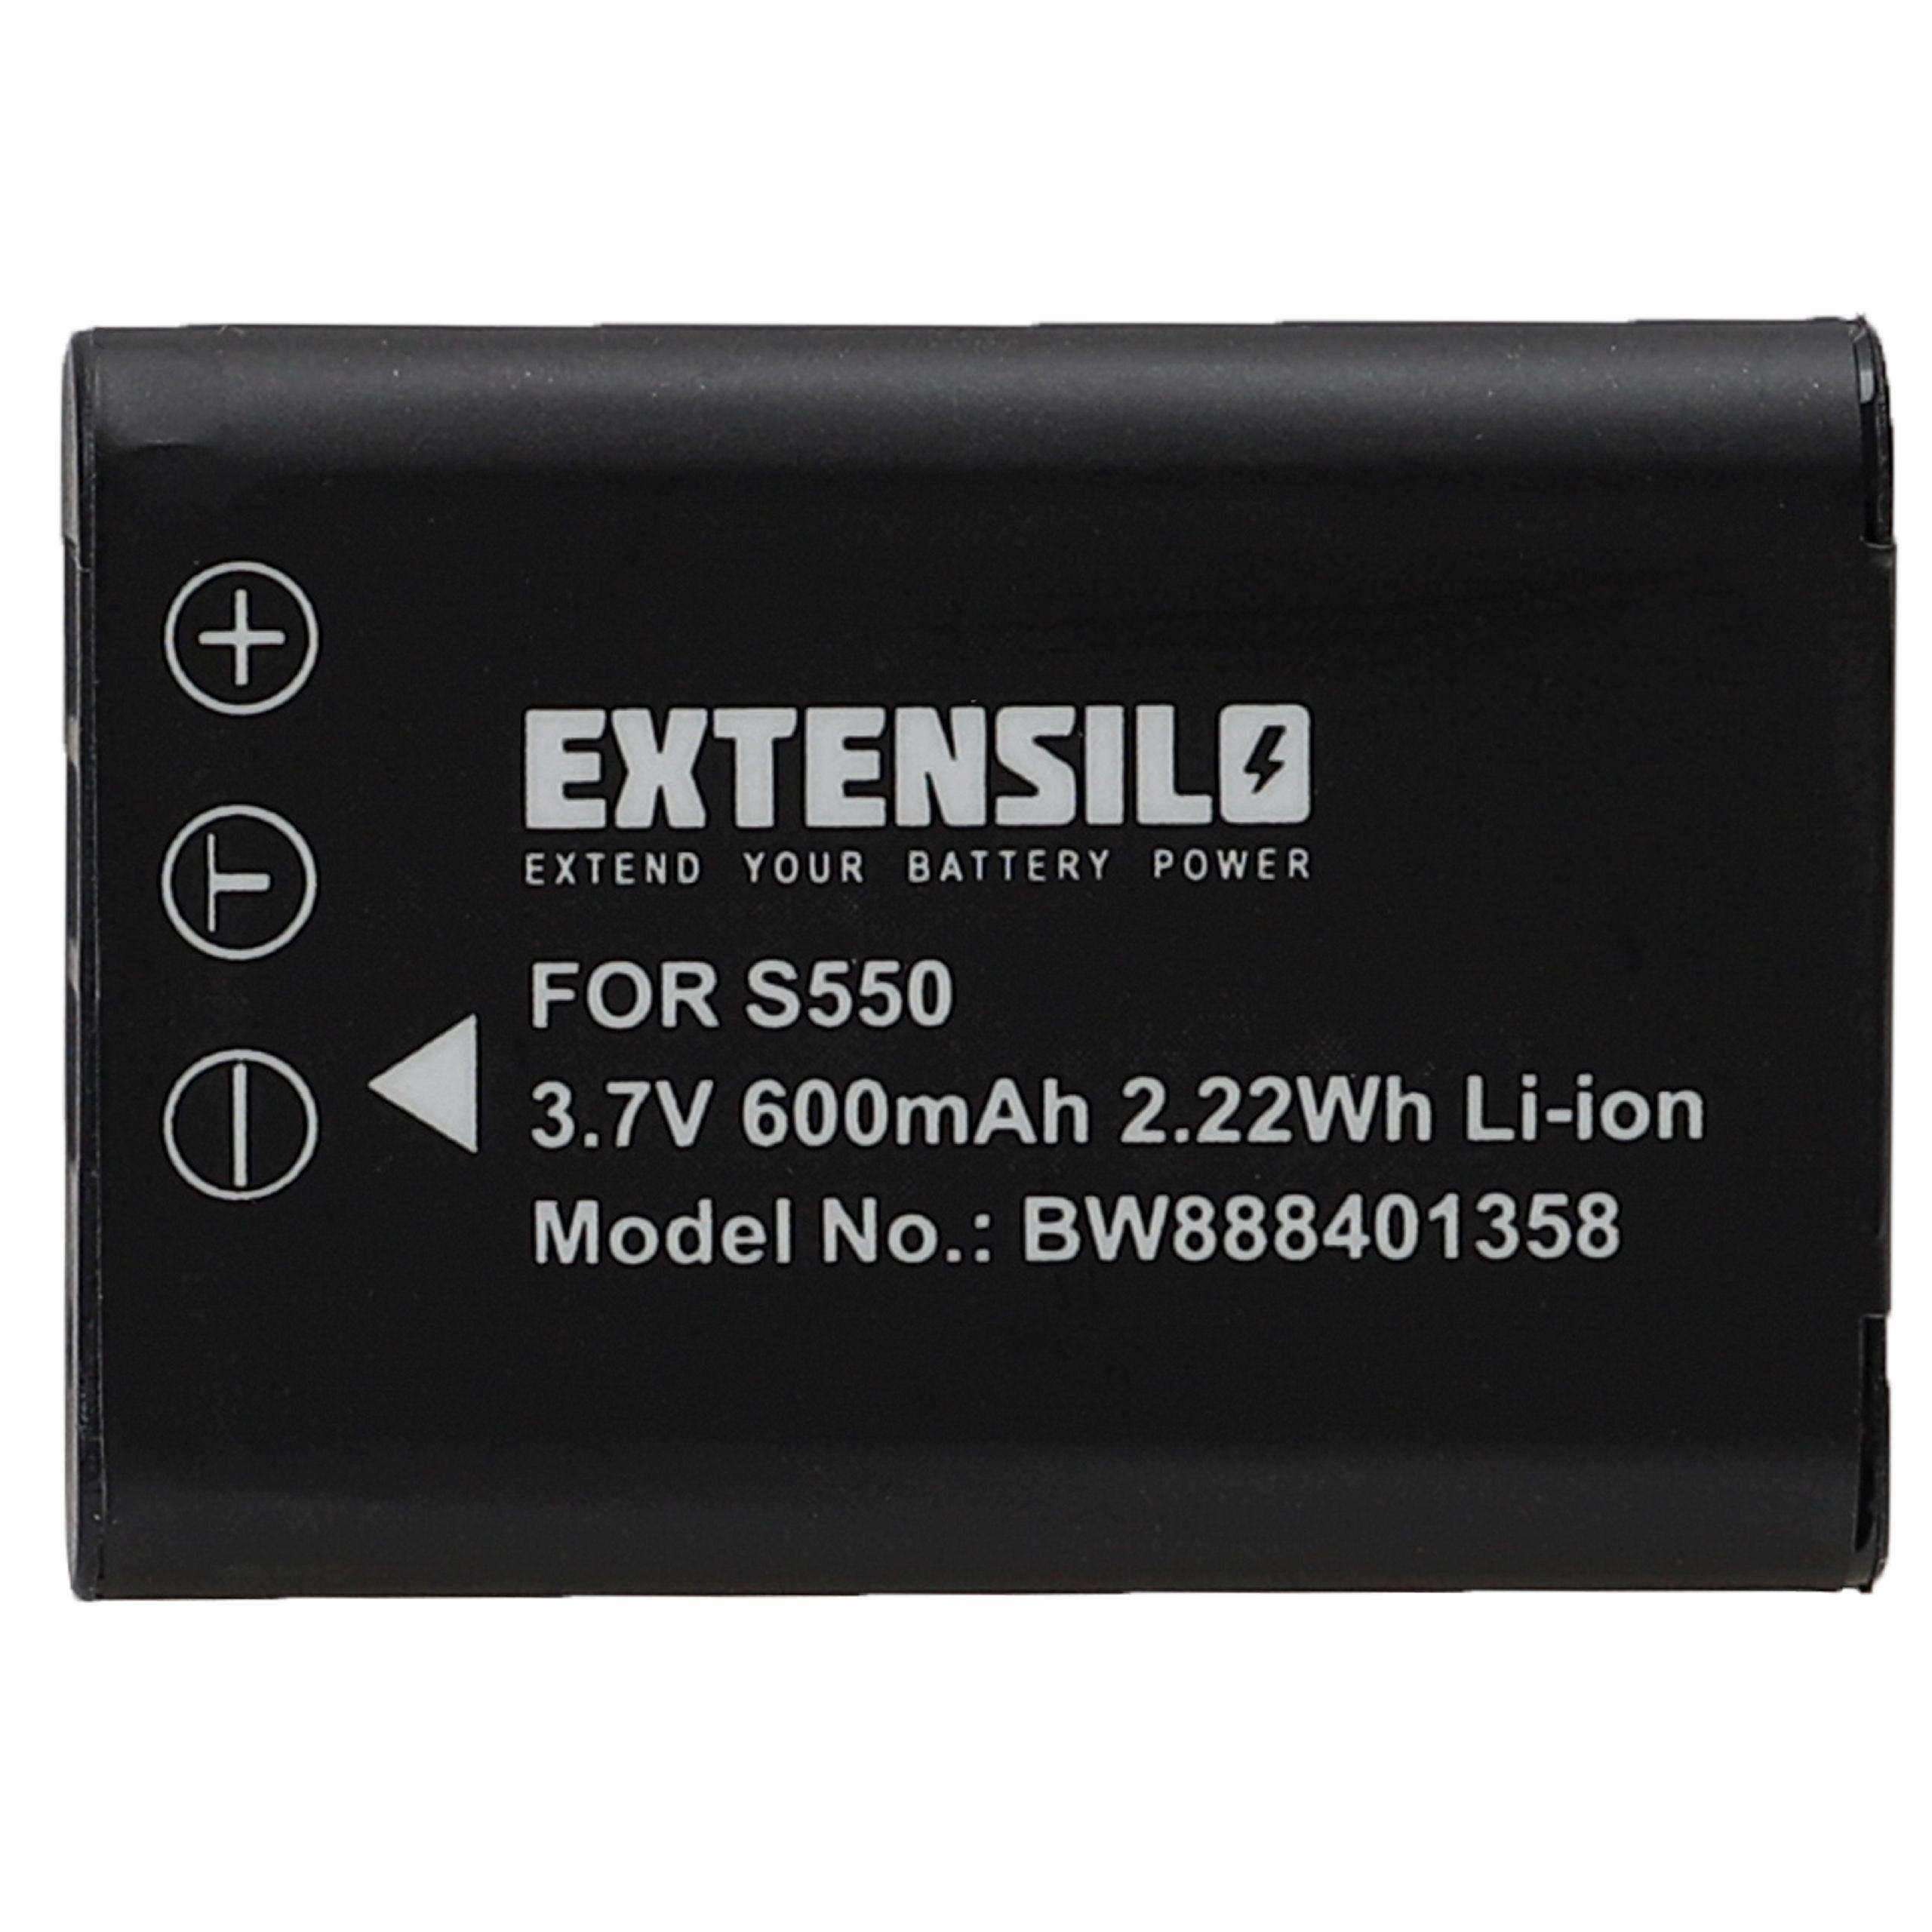 Battery Replacement for Nikon EN-EL11 - 600mAh, 3.7V, Li-Ion